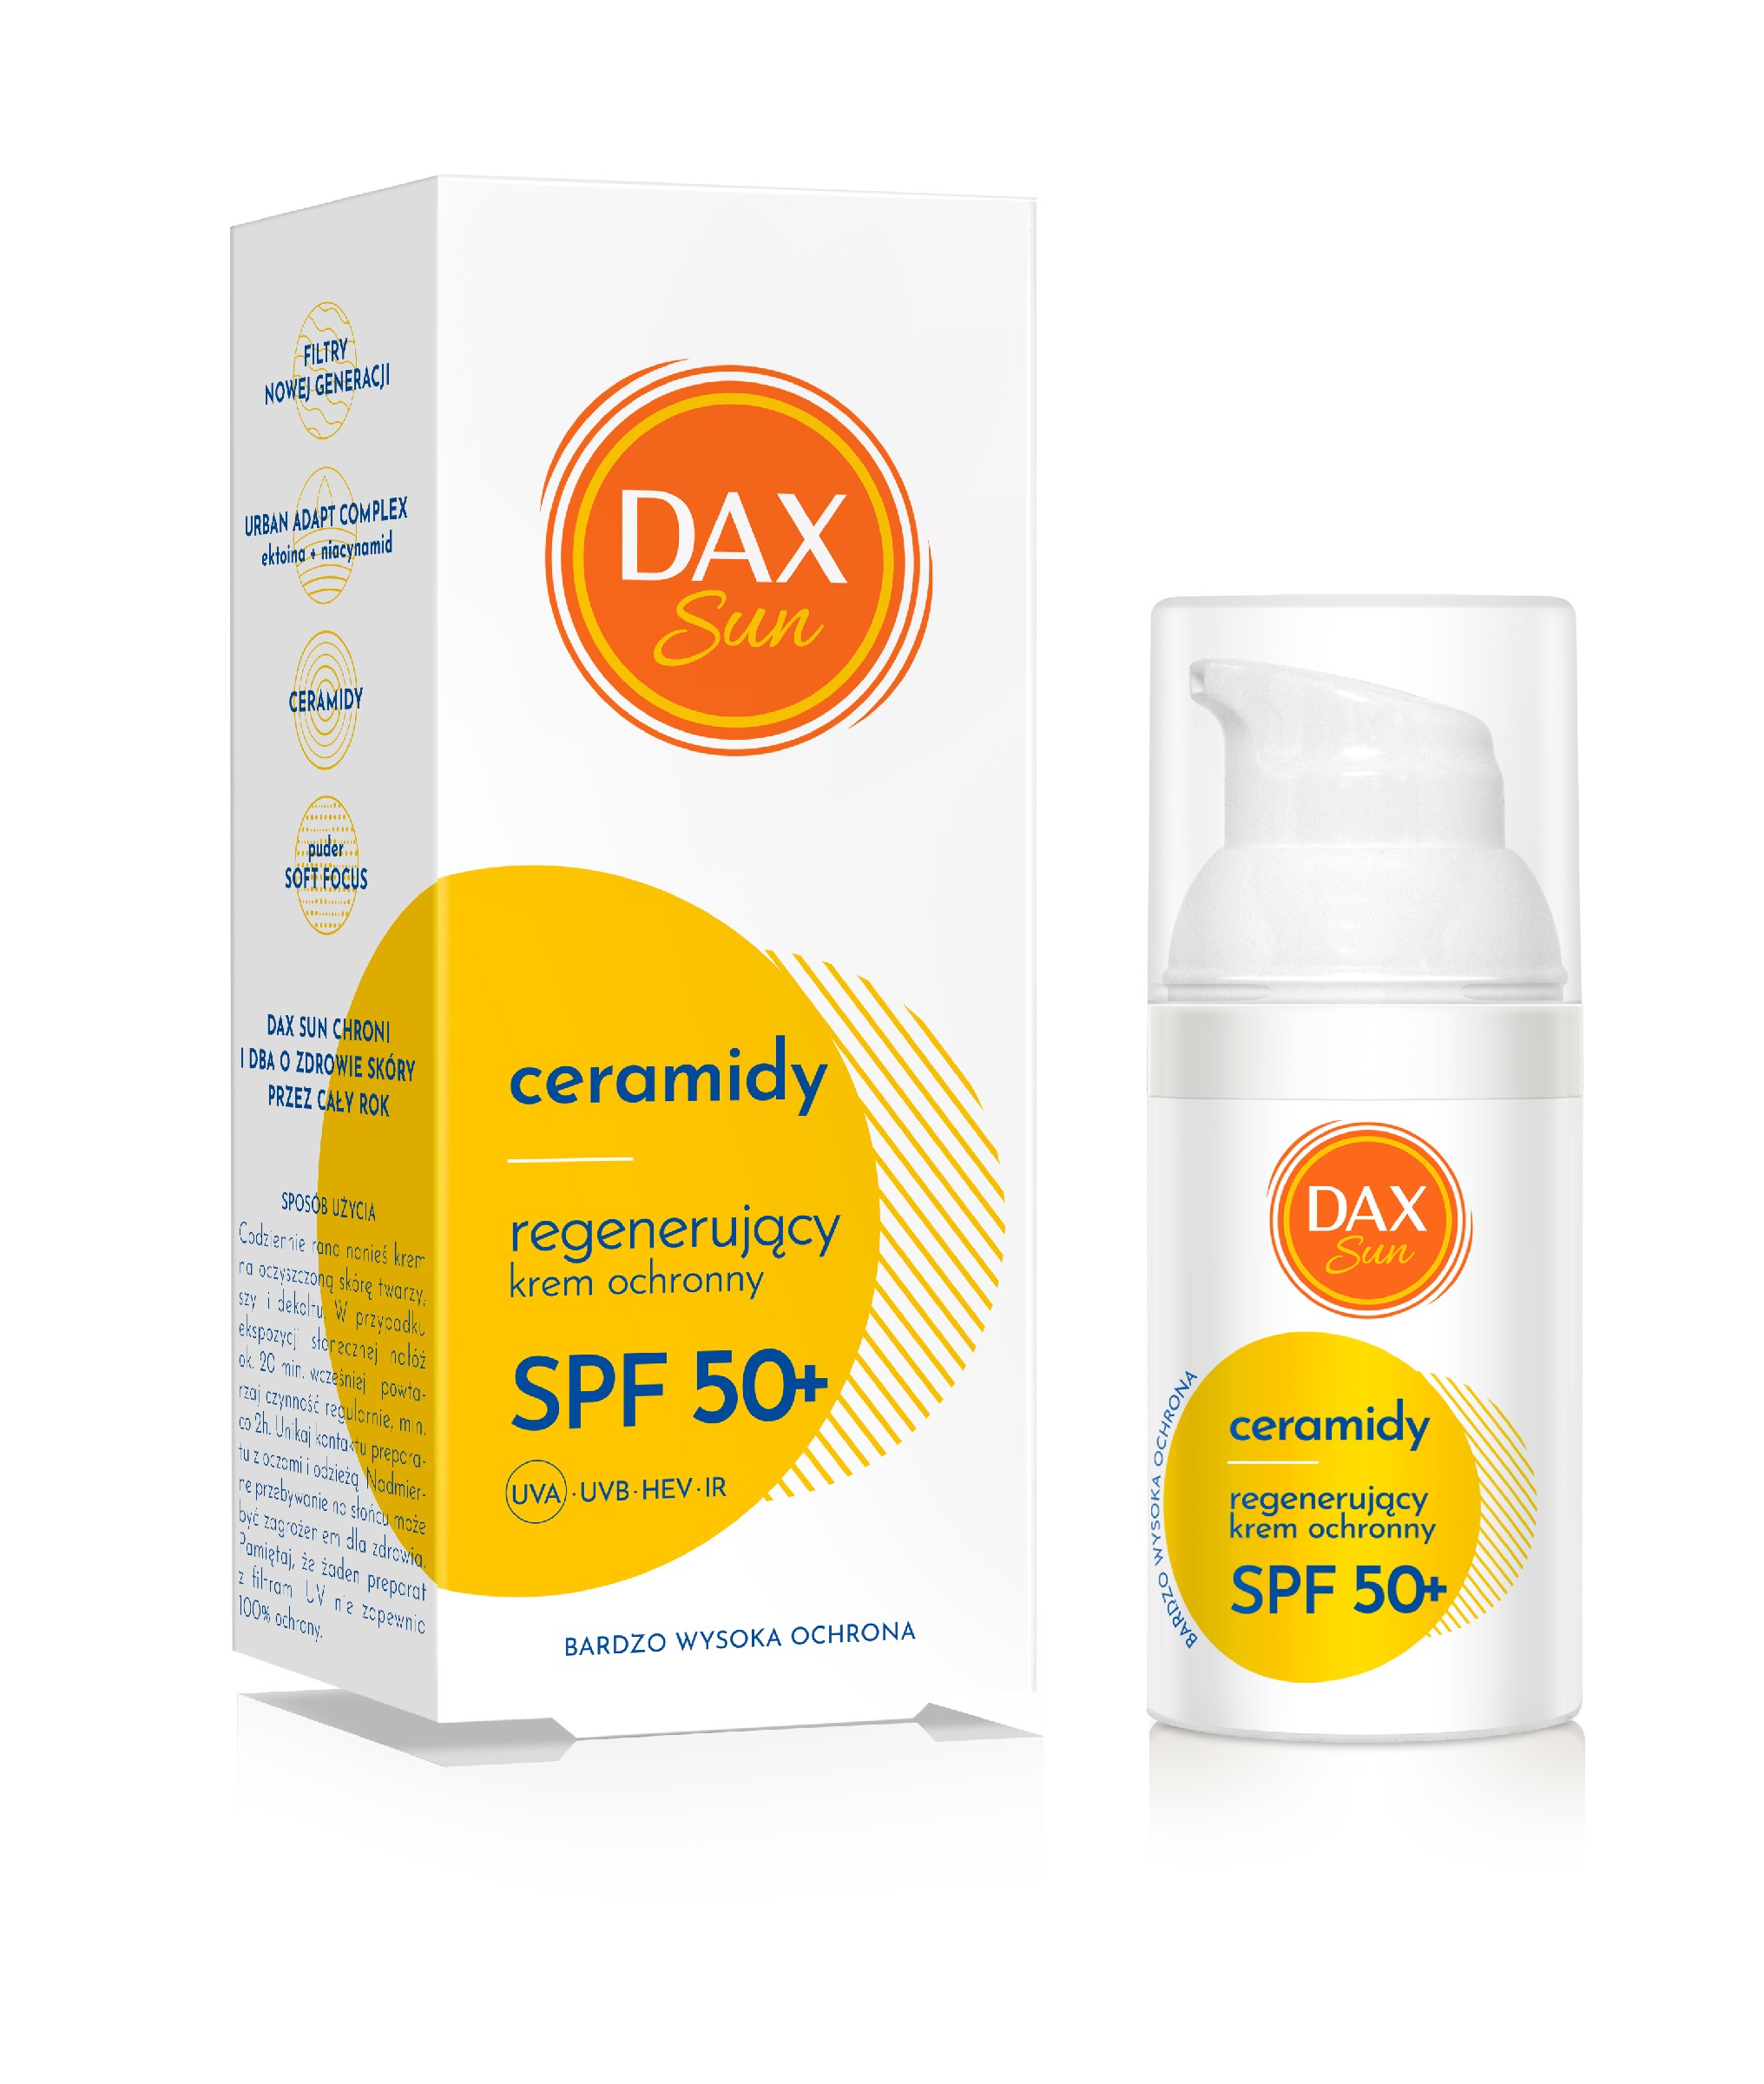 DAX Sun Regenerujący krem ochronny z ceramidami SPF 50+ 30 ml